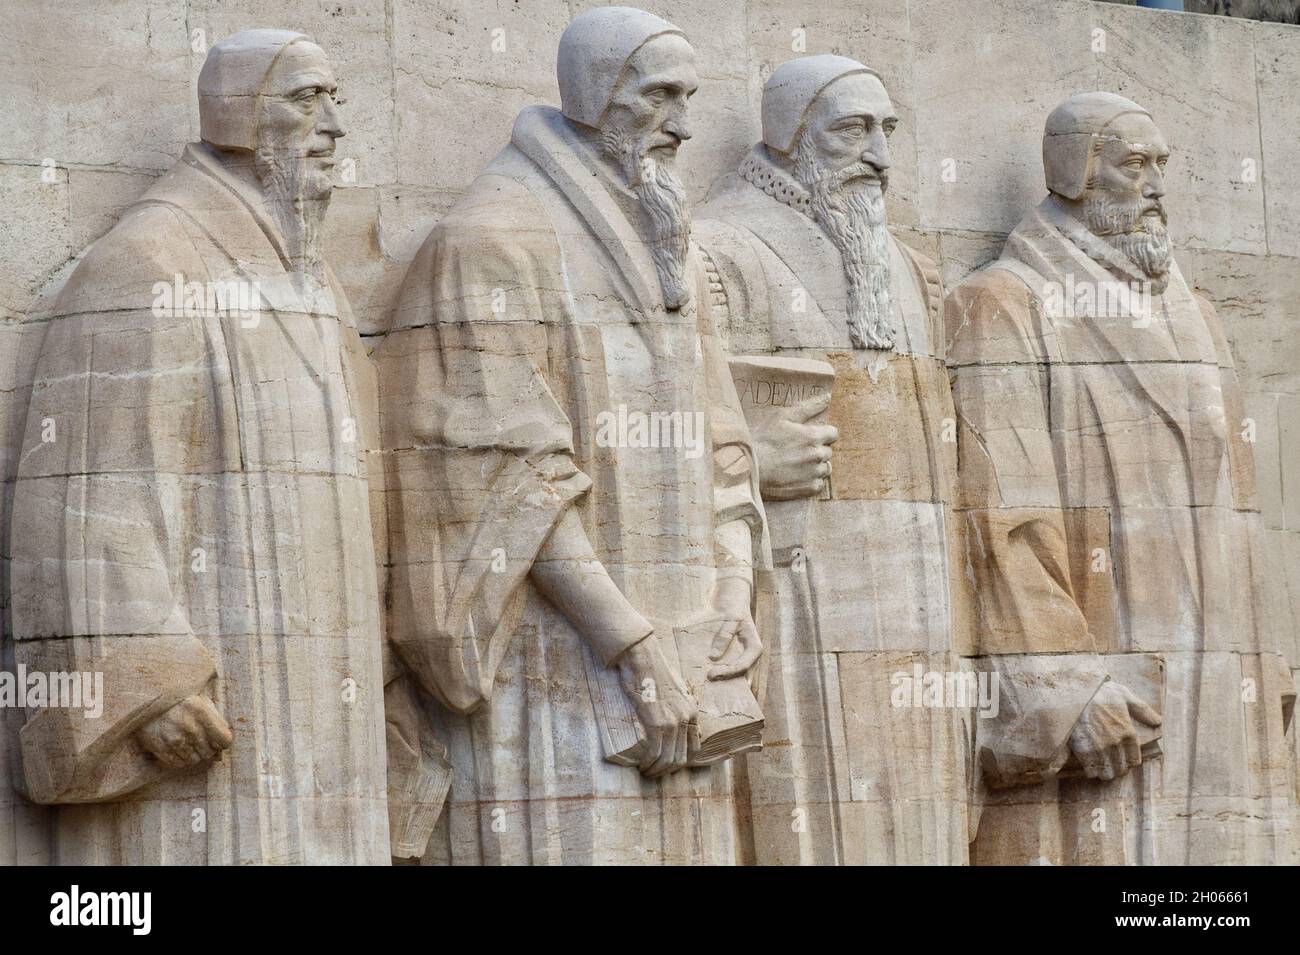 Reformation Wall (1909): William Farel, John Calvin, Theodore Beza, and John Knox - detail - Geneva - Switzerland Stock Photo